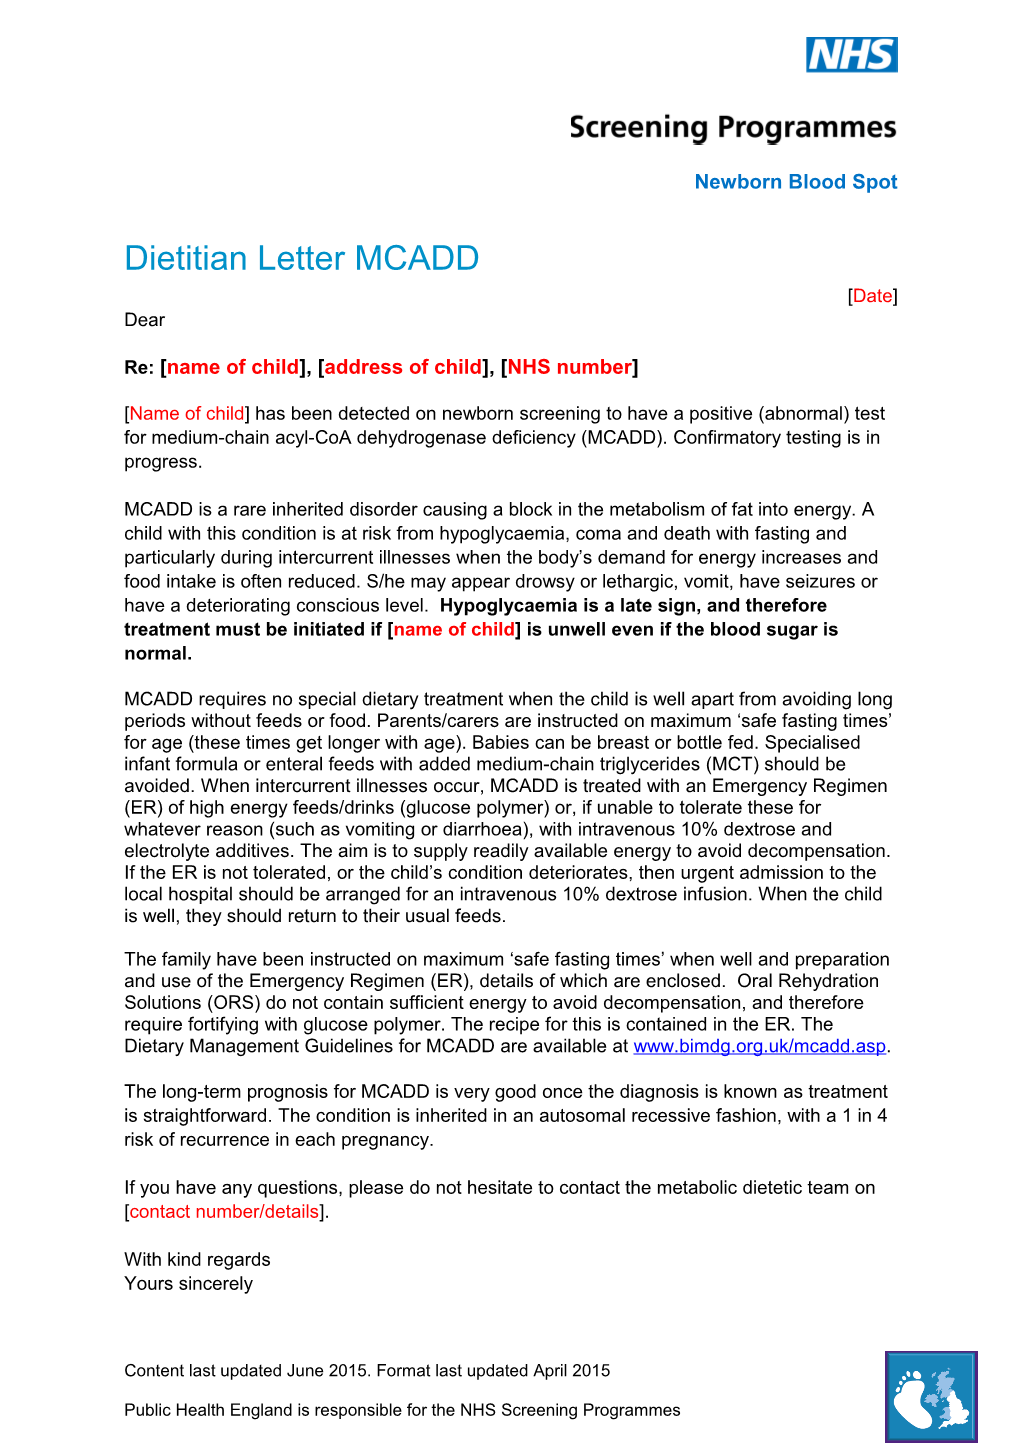 Dietitian Letter MCADD